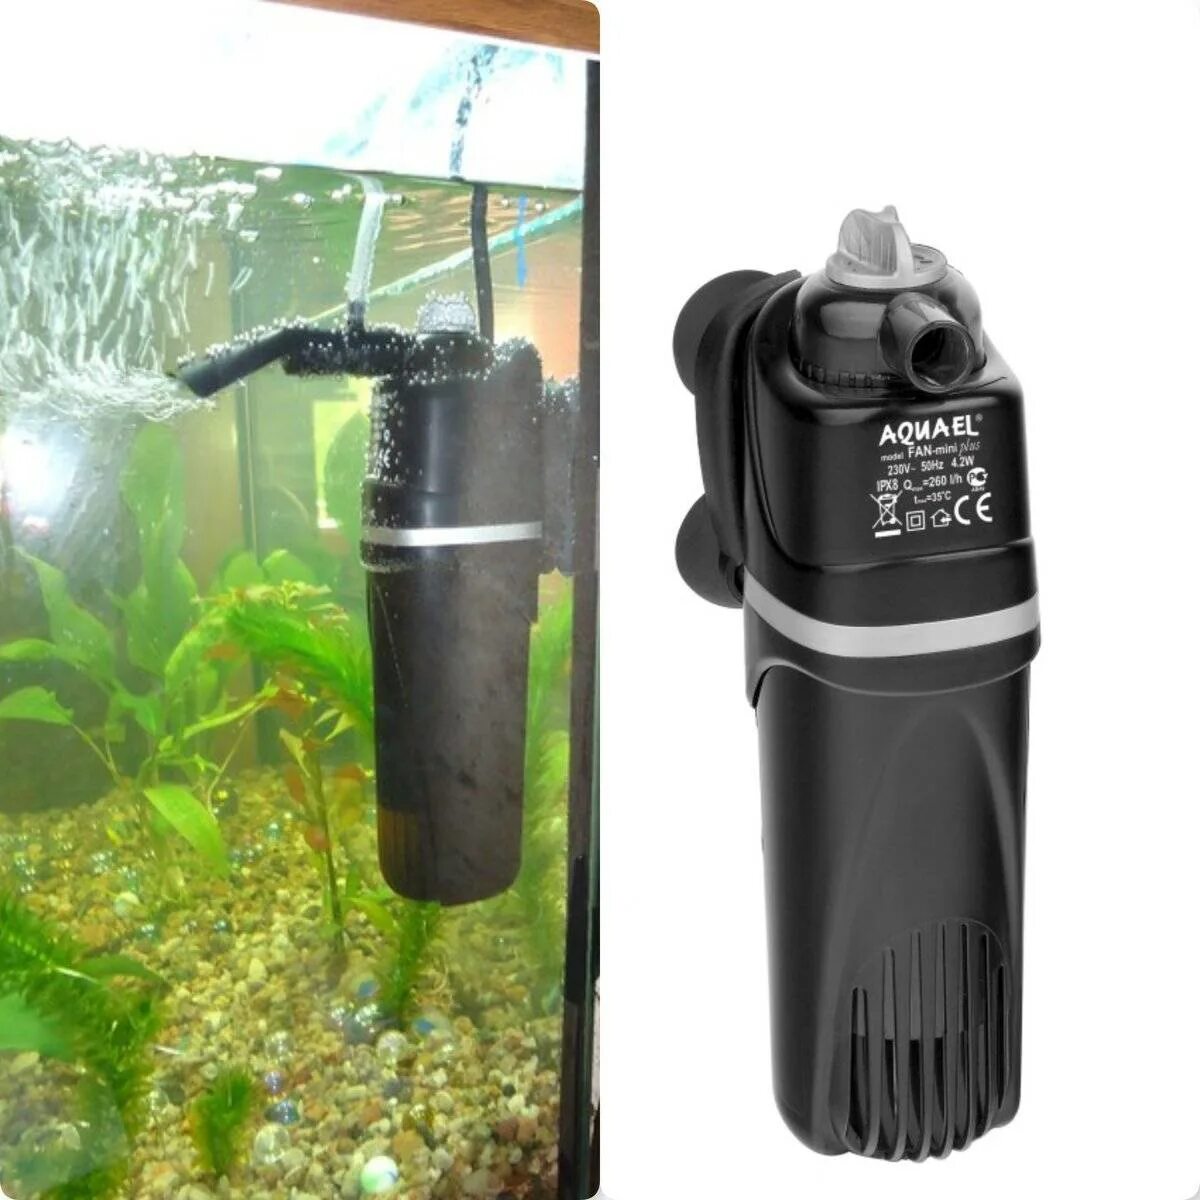 Внешний фильтр Aquael для аквариума на 200 литров. Компрессор аквариумный акваэль. Фильтр аквариумный внешний dophh 700. Aquael Fan Mini Plus. Aquael pat